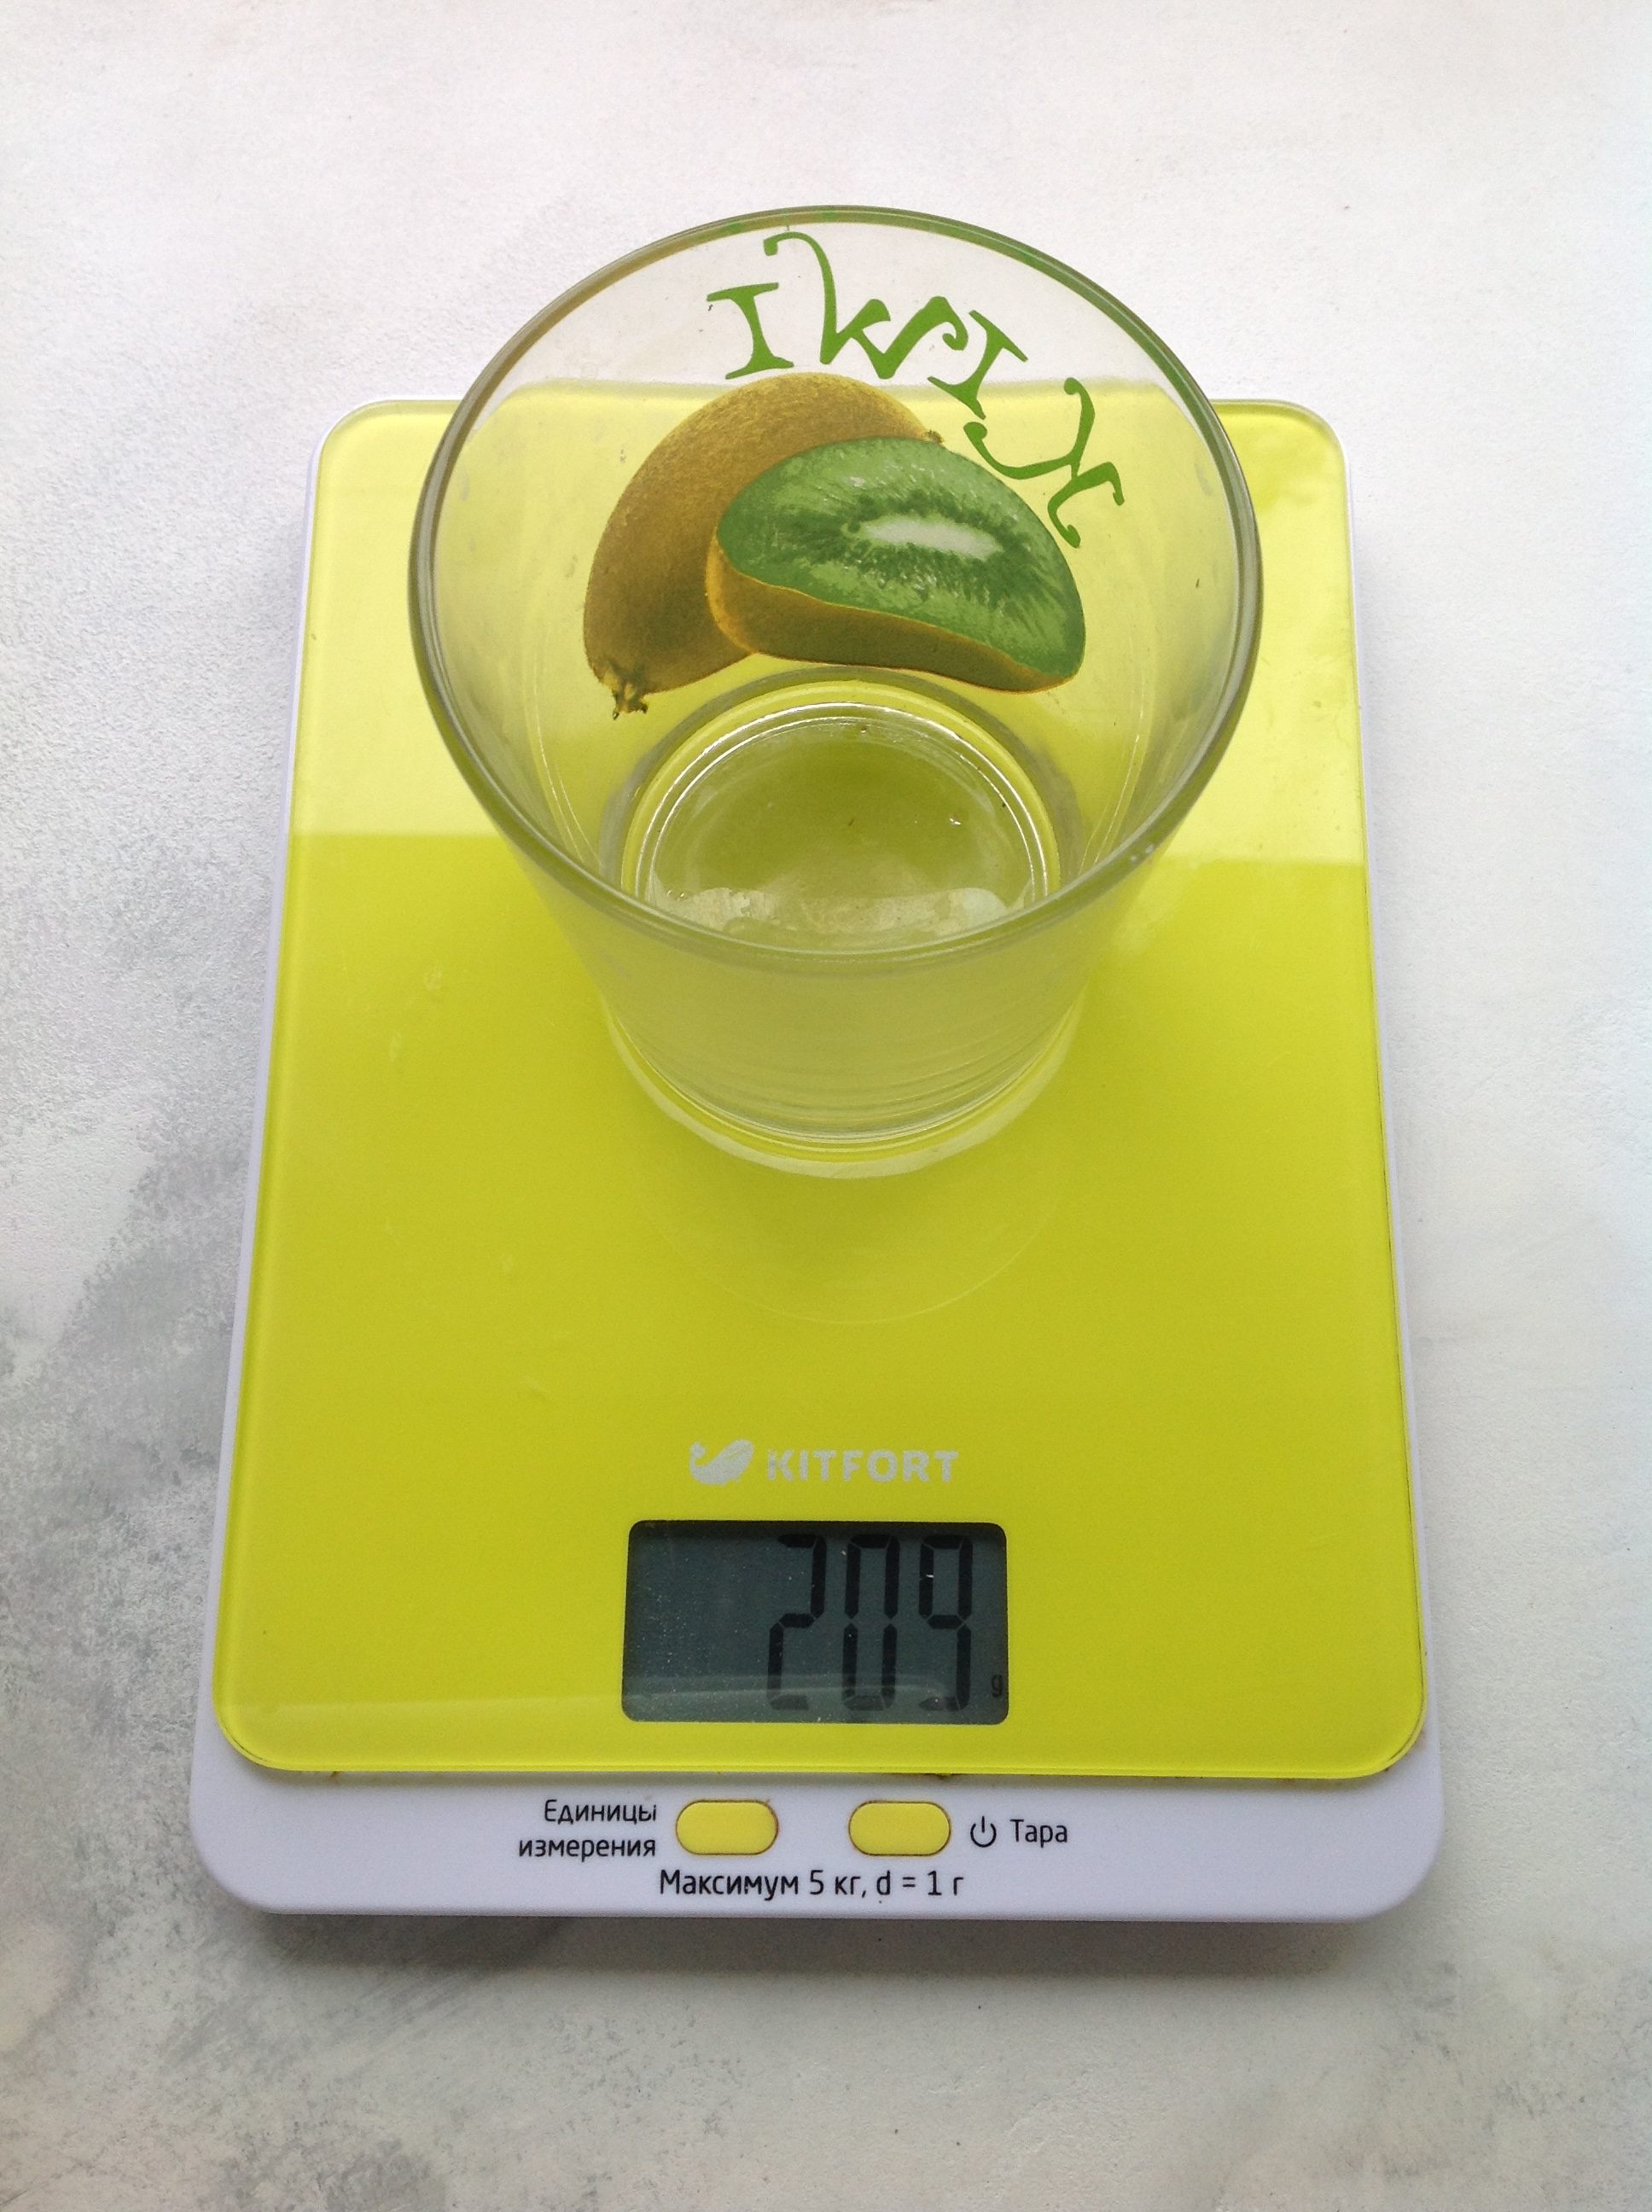 weight 250 ml glass beaker